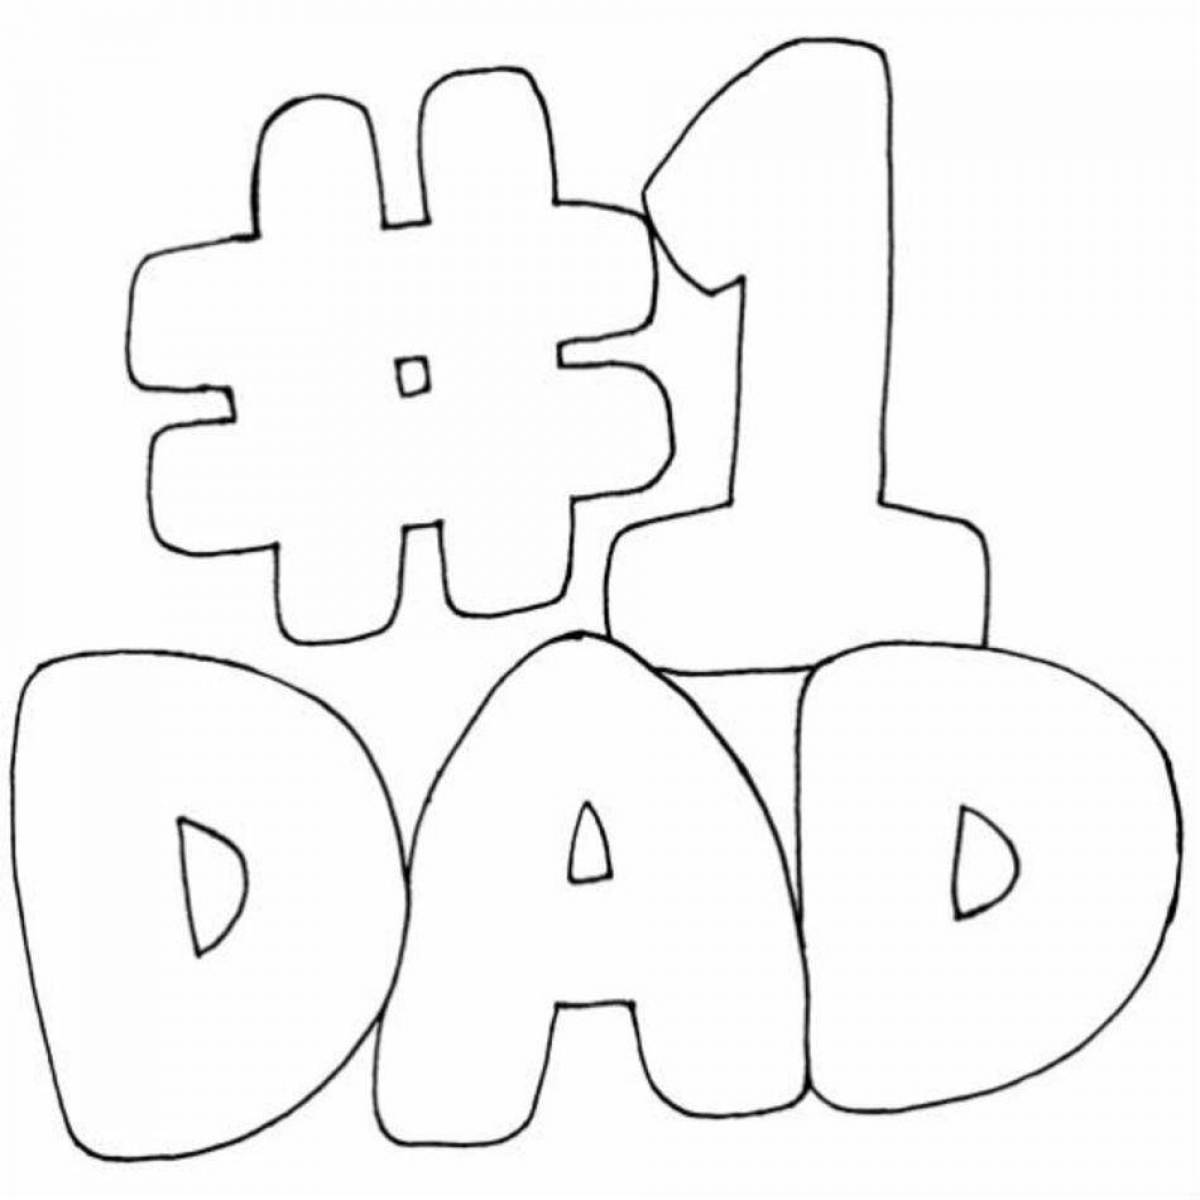 Fun card for dad